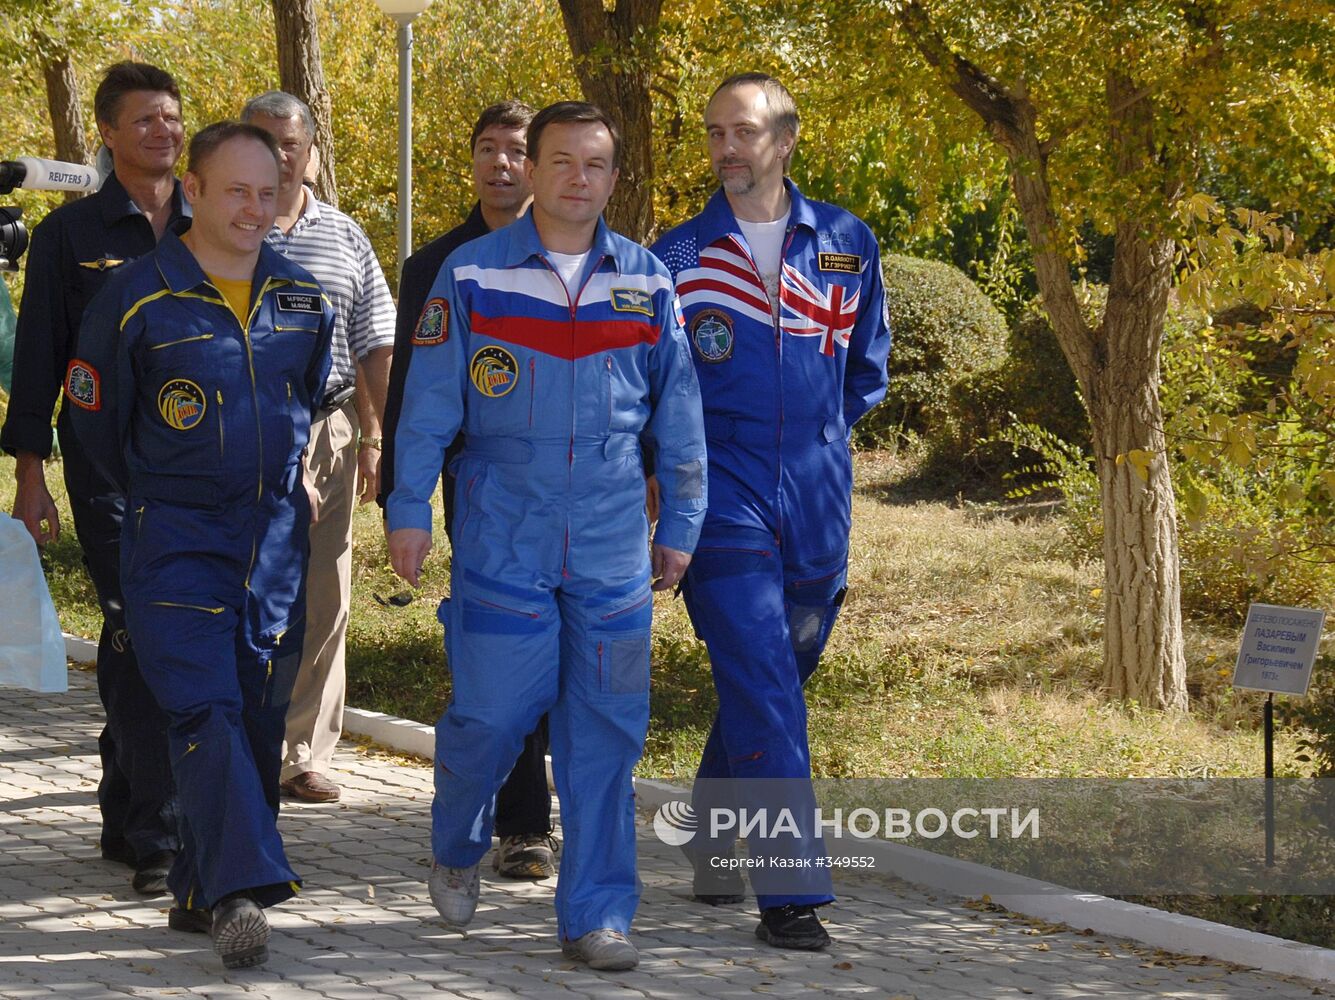 Члены 18-й экспедиции на МКС на космодроме "Байконур"